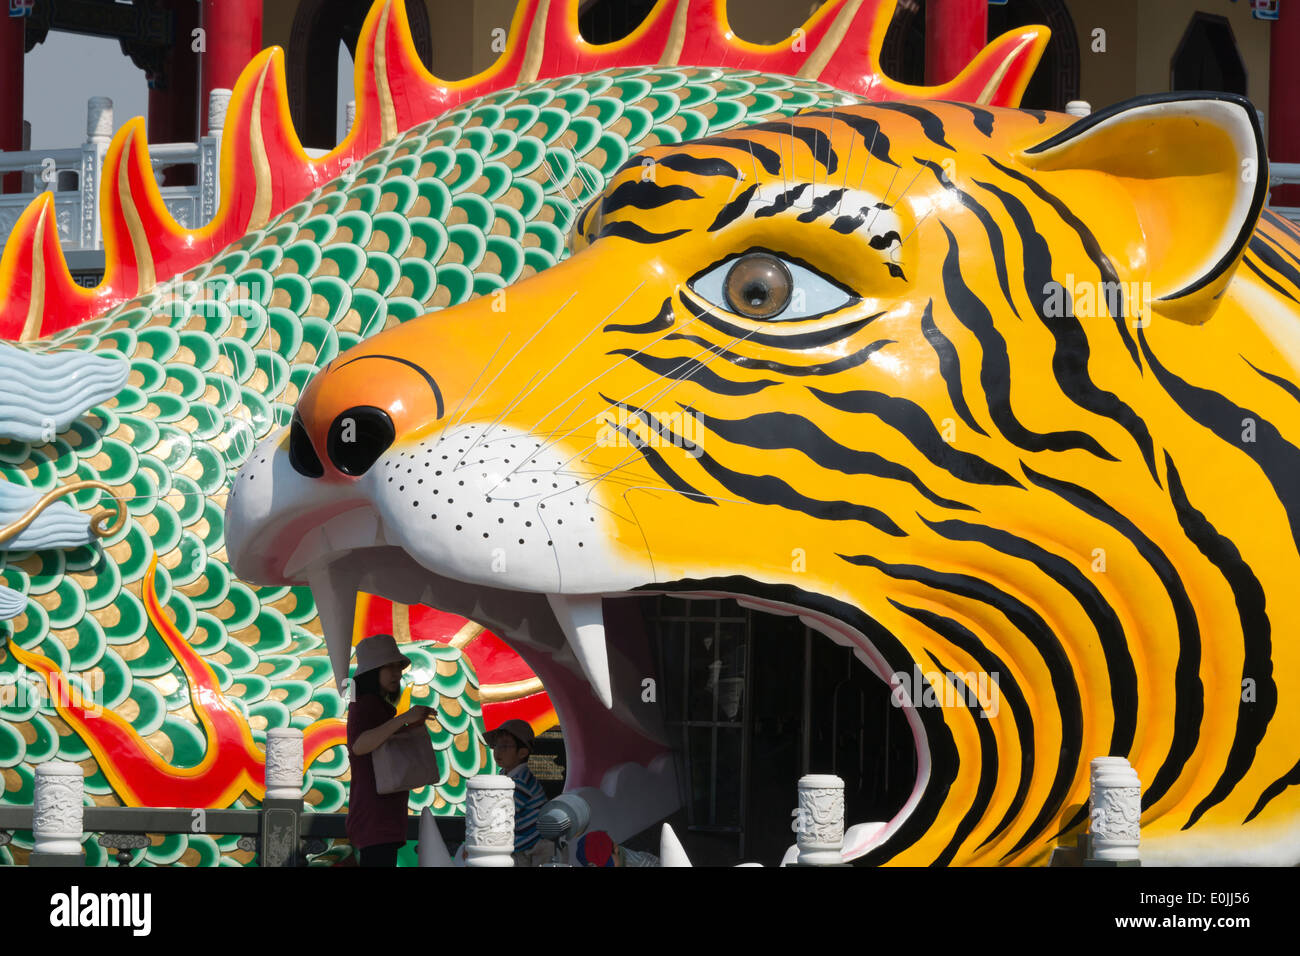 Drachen und Tiger Pagoden, Lotus Lake, Kaohsiung, Taiwan Stockfoto